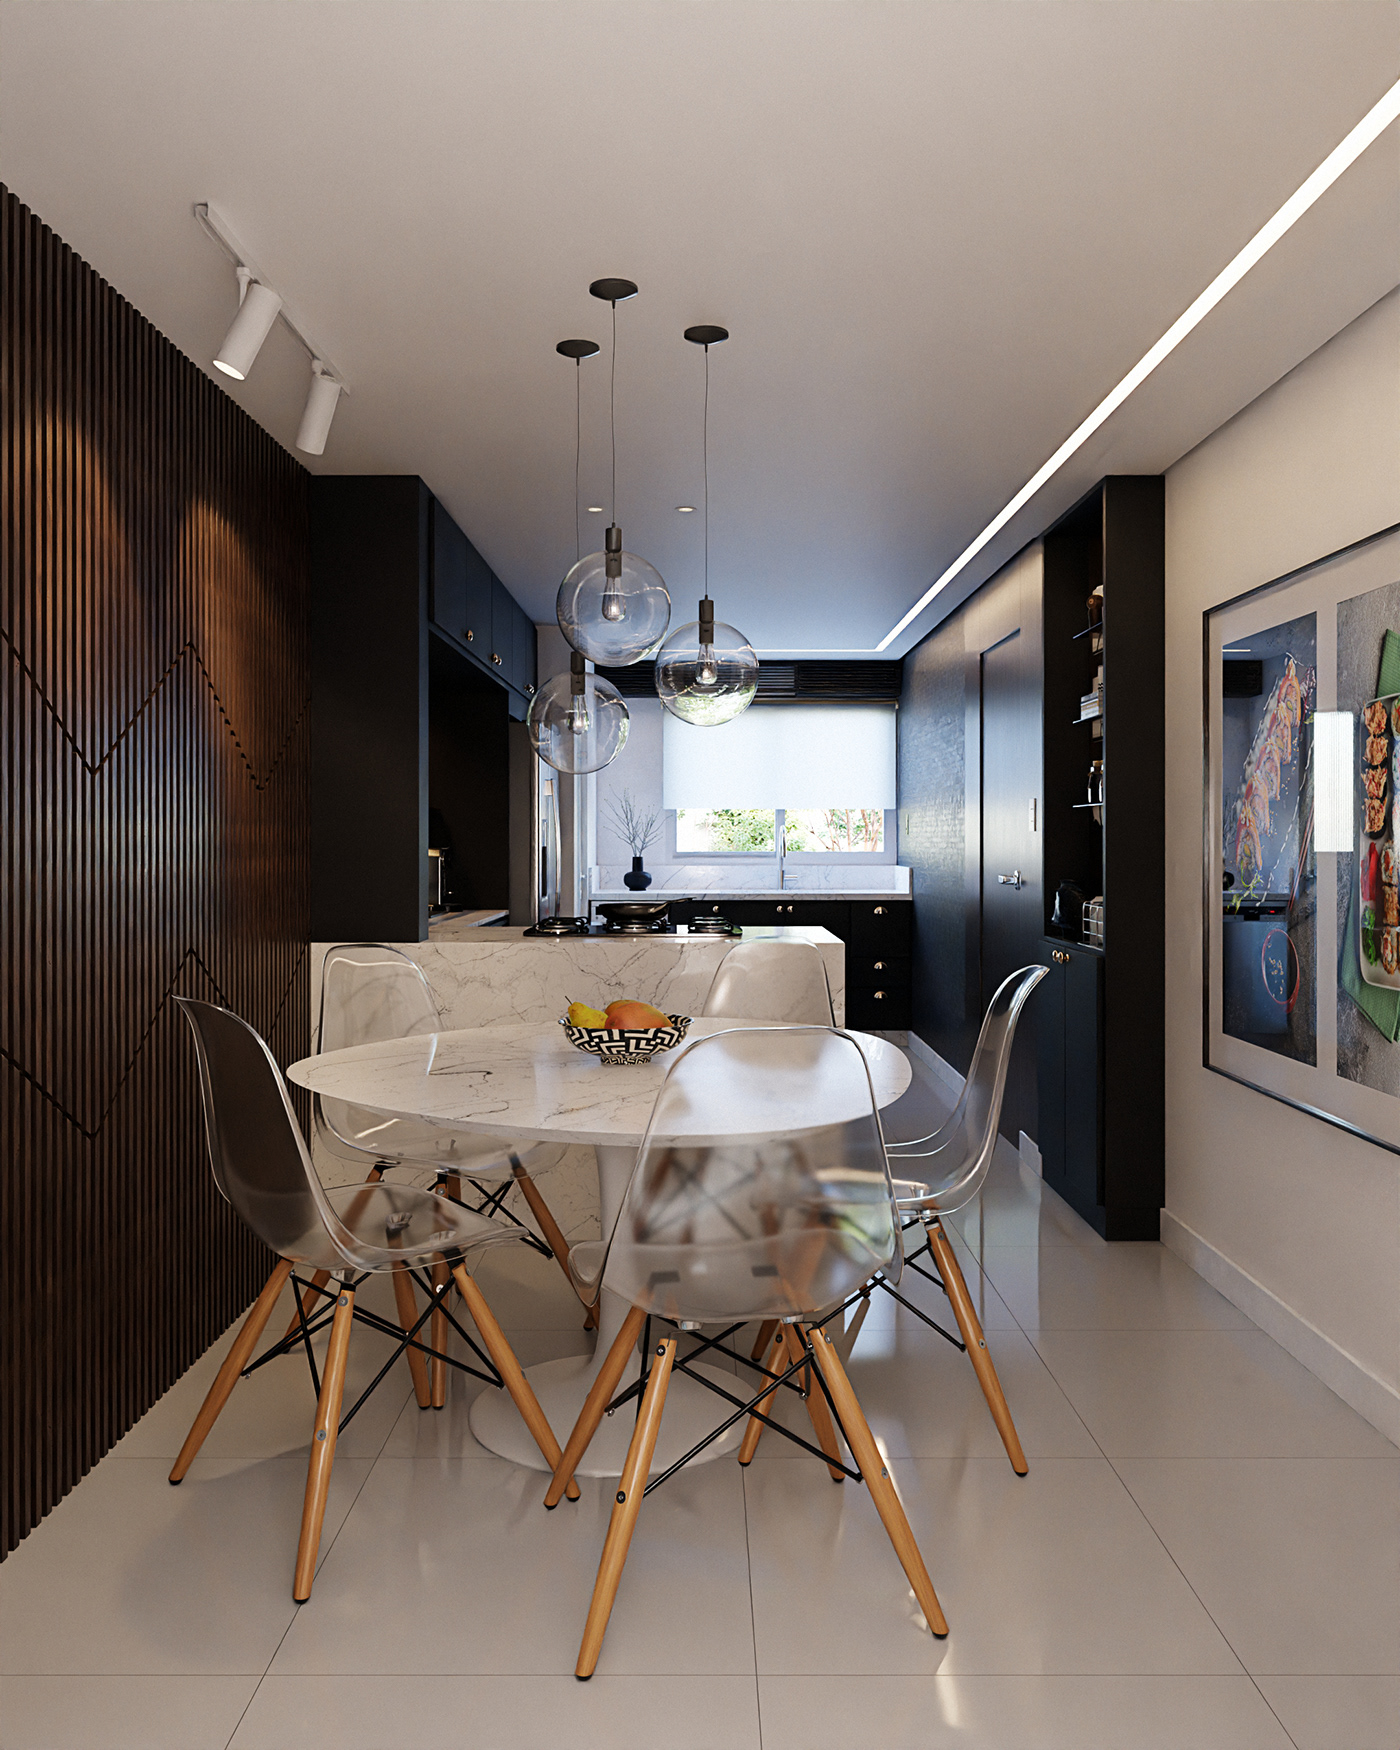 3D architecture archviz blender CGI cozinha interior design  kitchen Render visualization